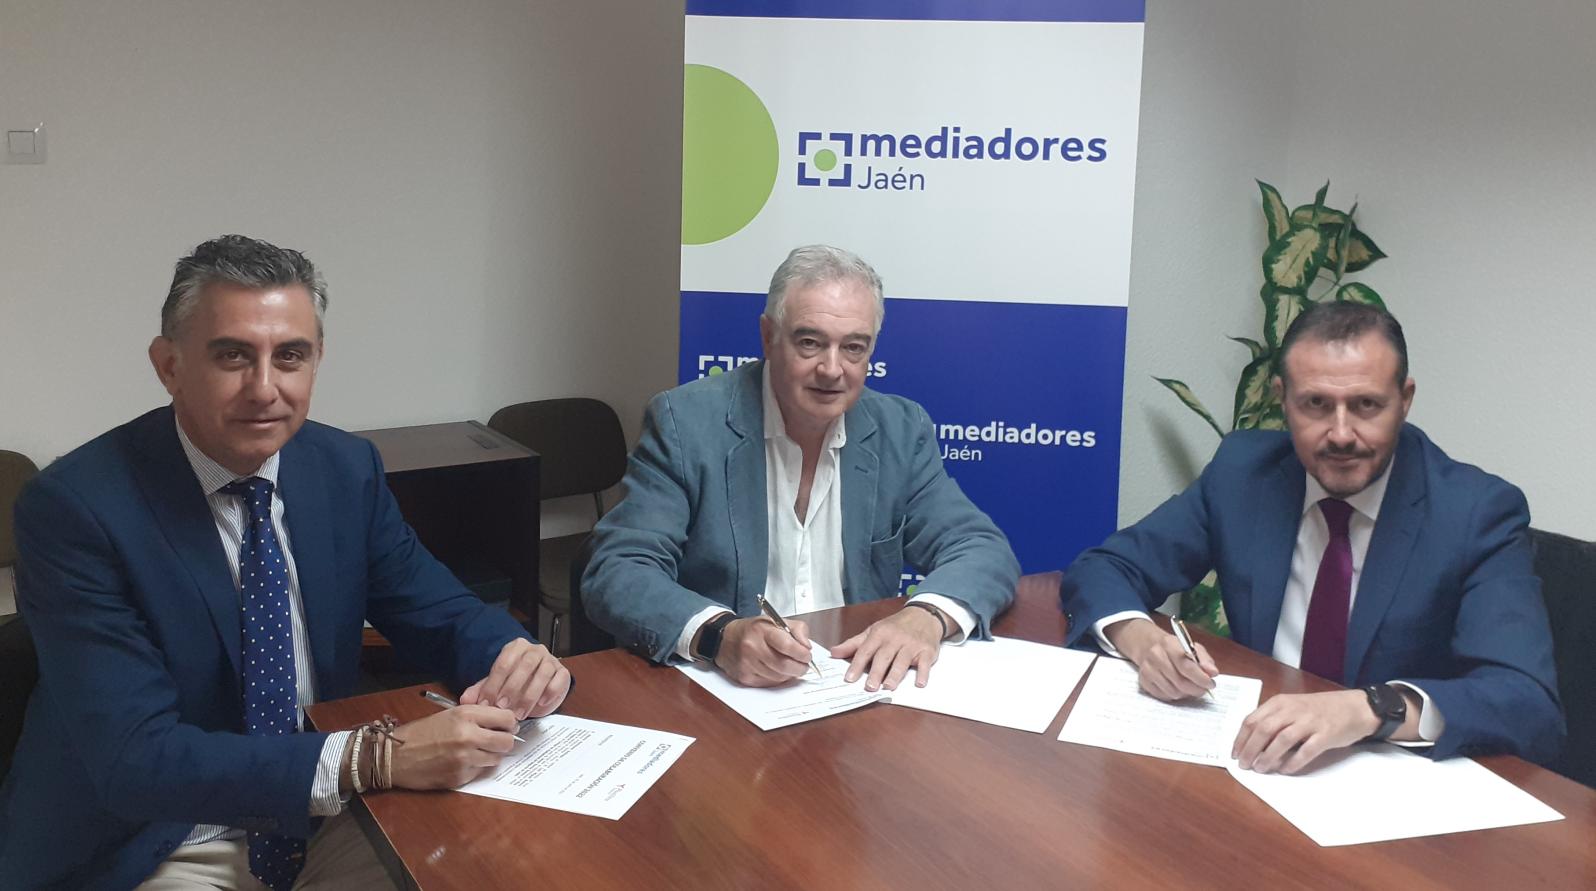 Acuerdo de colaboración con el Colegio de Mediadores de Seguros de Jaén 